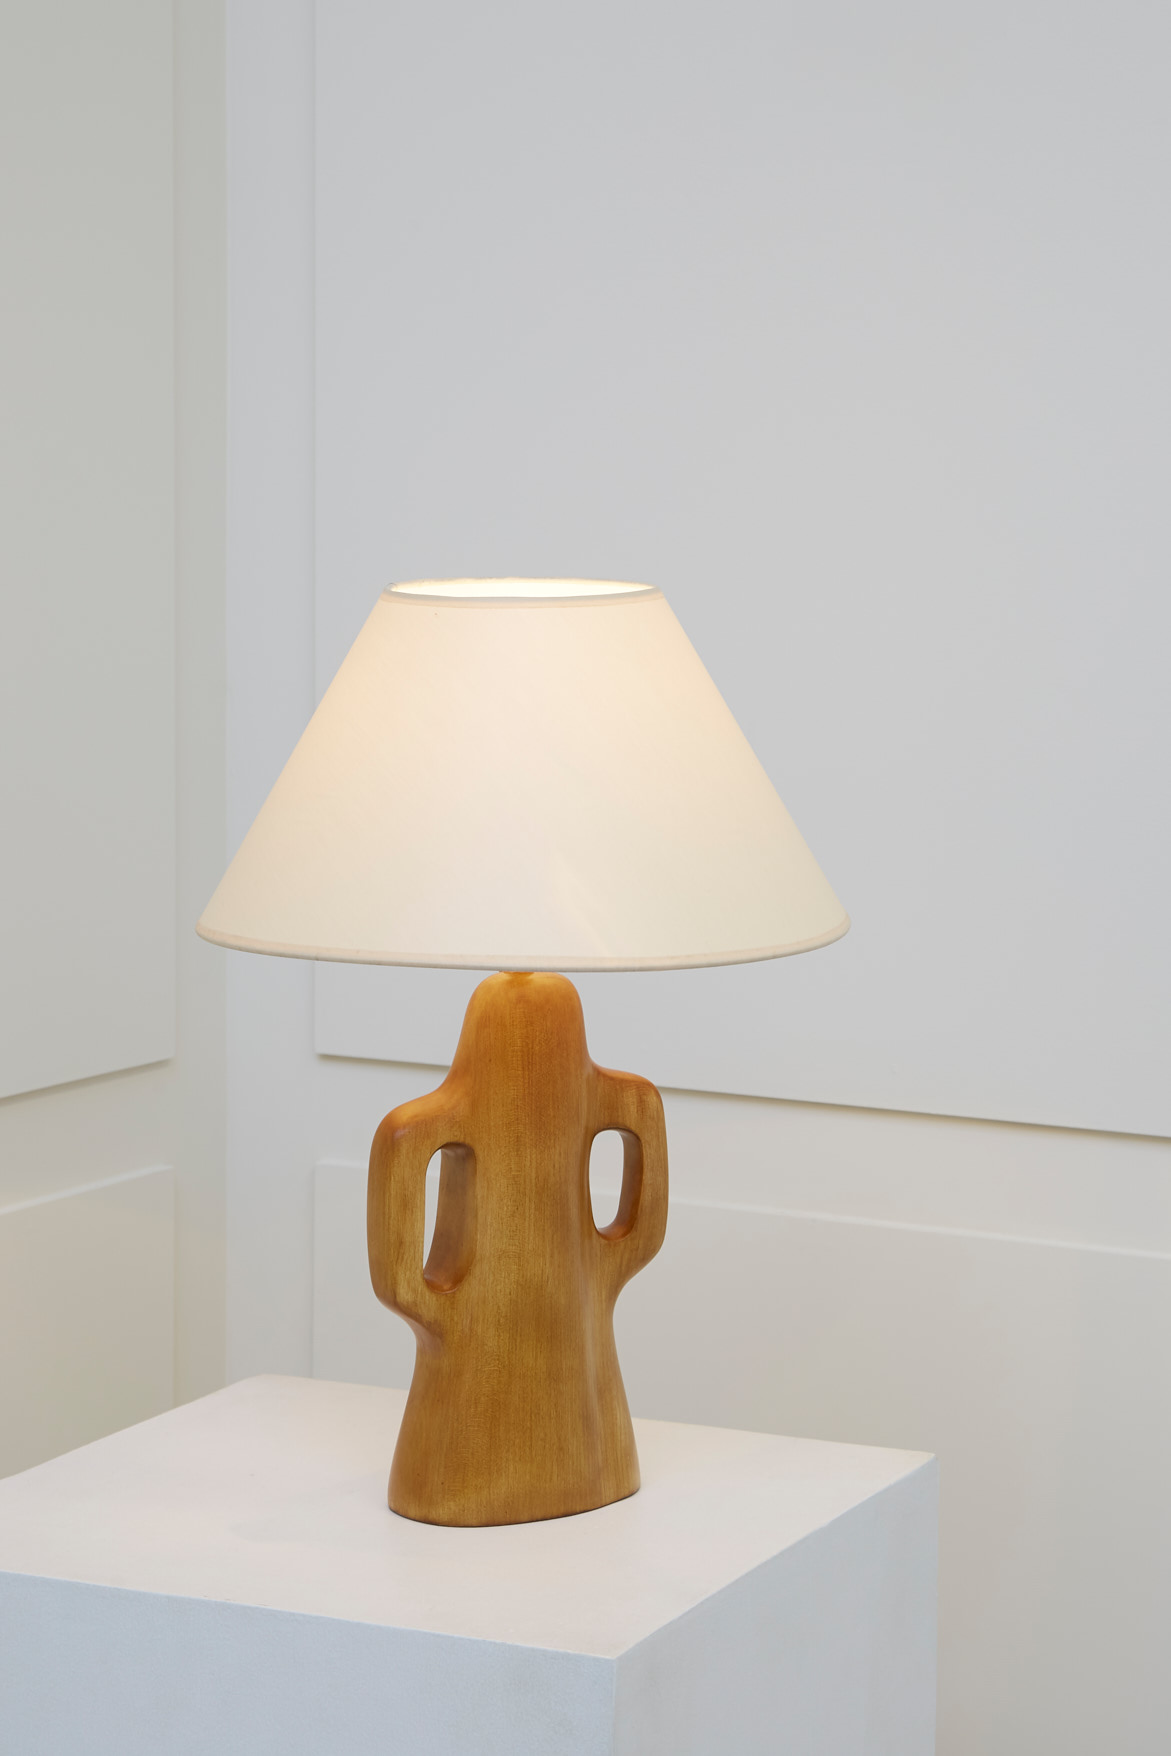 Alexandre Noll, Cherry wood lamp, vue 02